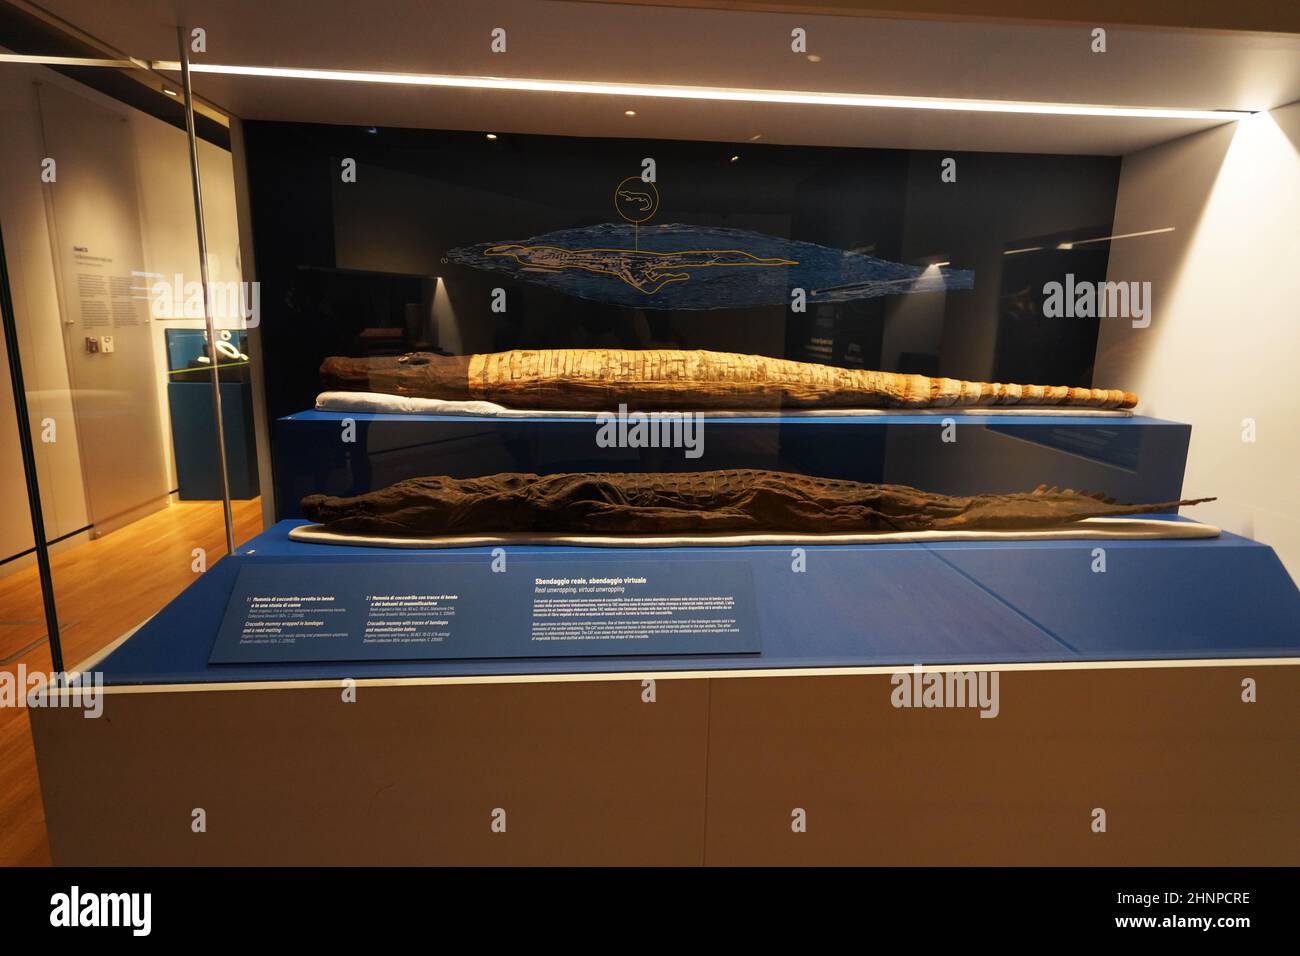 TURIN, ITALIEN - 19. AUGUST 2021: Krokodilmumie. Mumifizierung des Krokodils während der ägyptischen Zivilisation, Ägyptisches Museum von Turin, Italien Stockfoto